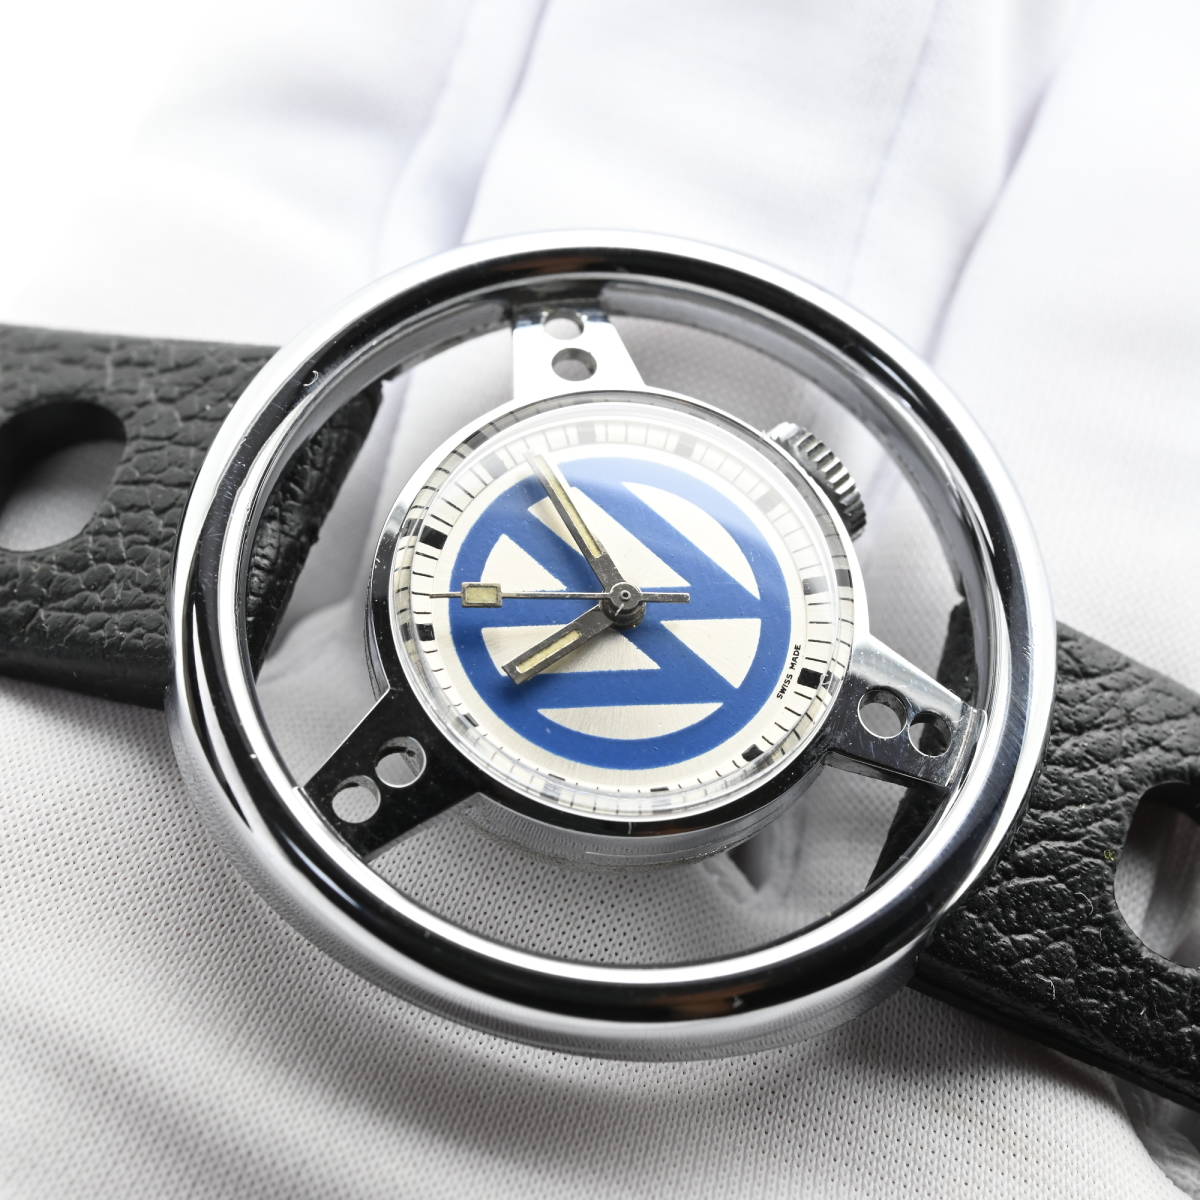 フォルクスワ ゲン 時計の値段と価格推移は 42件の売買情報を集計したフォルクスワ ゲン 時計の価格や価値の推移データを公開